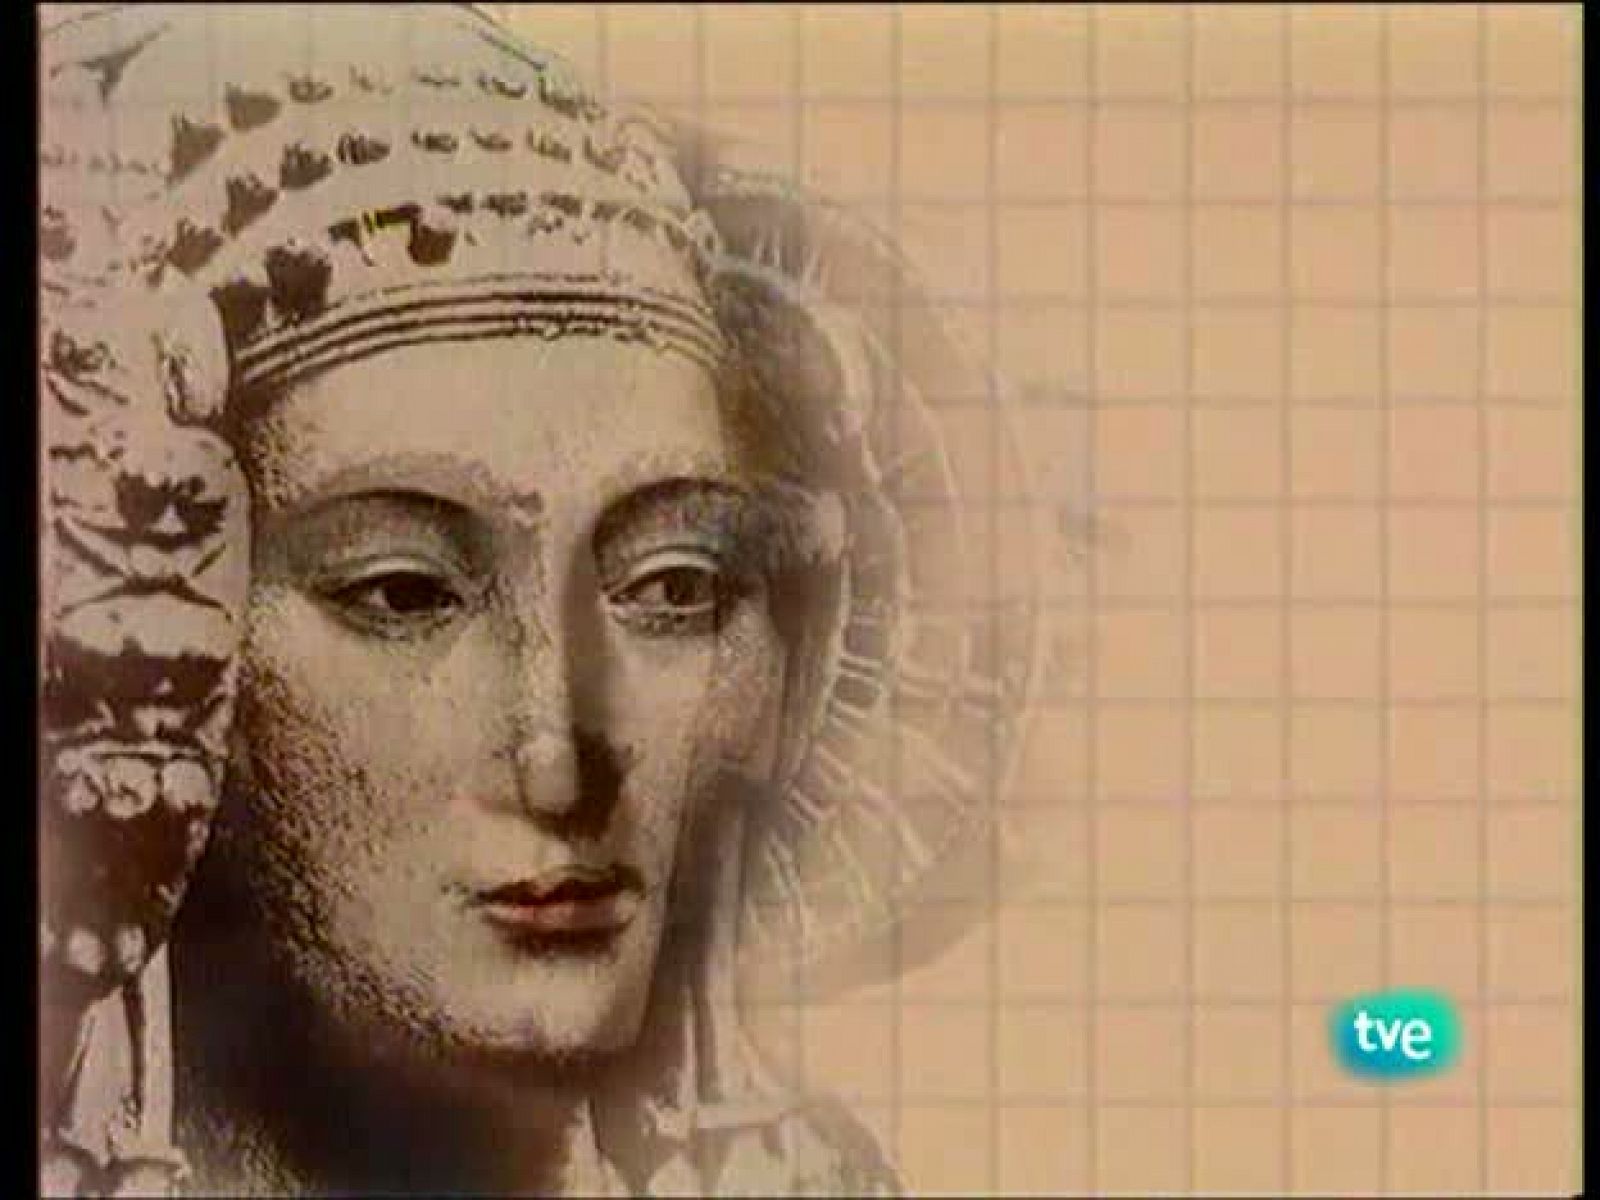 Mujeres en la historia - María de Zayas, una mujer sin rostro